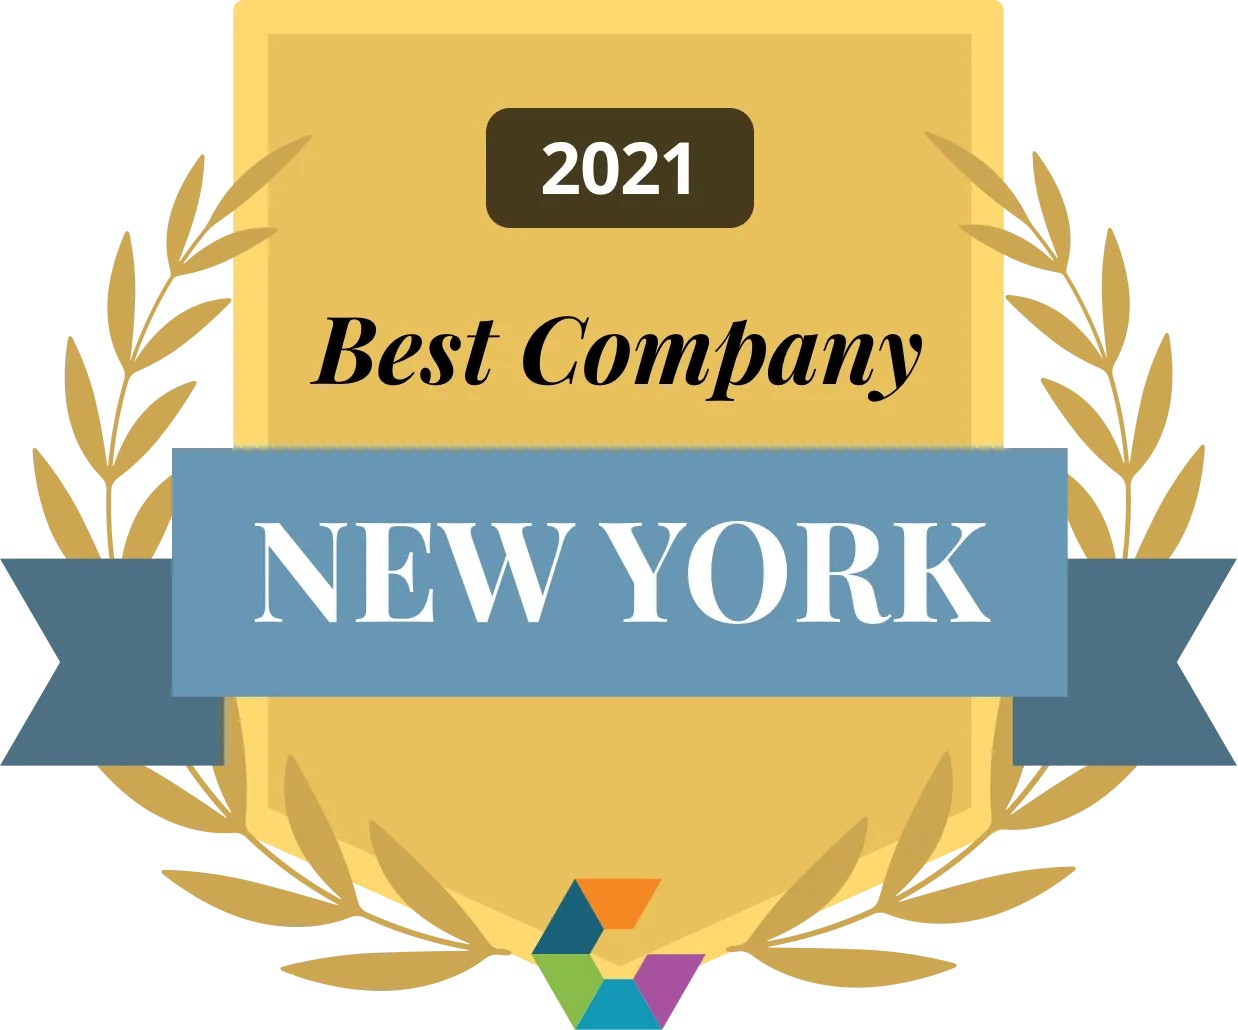 Comparably- Best Company NY 2021